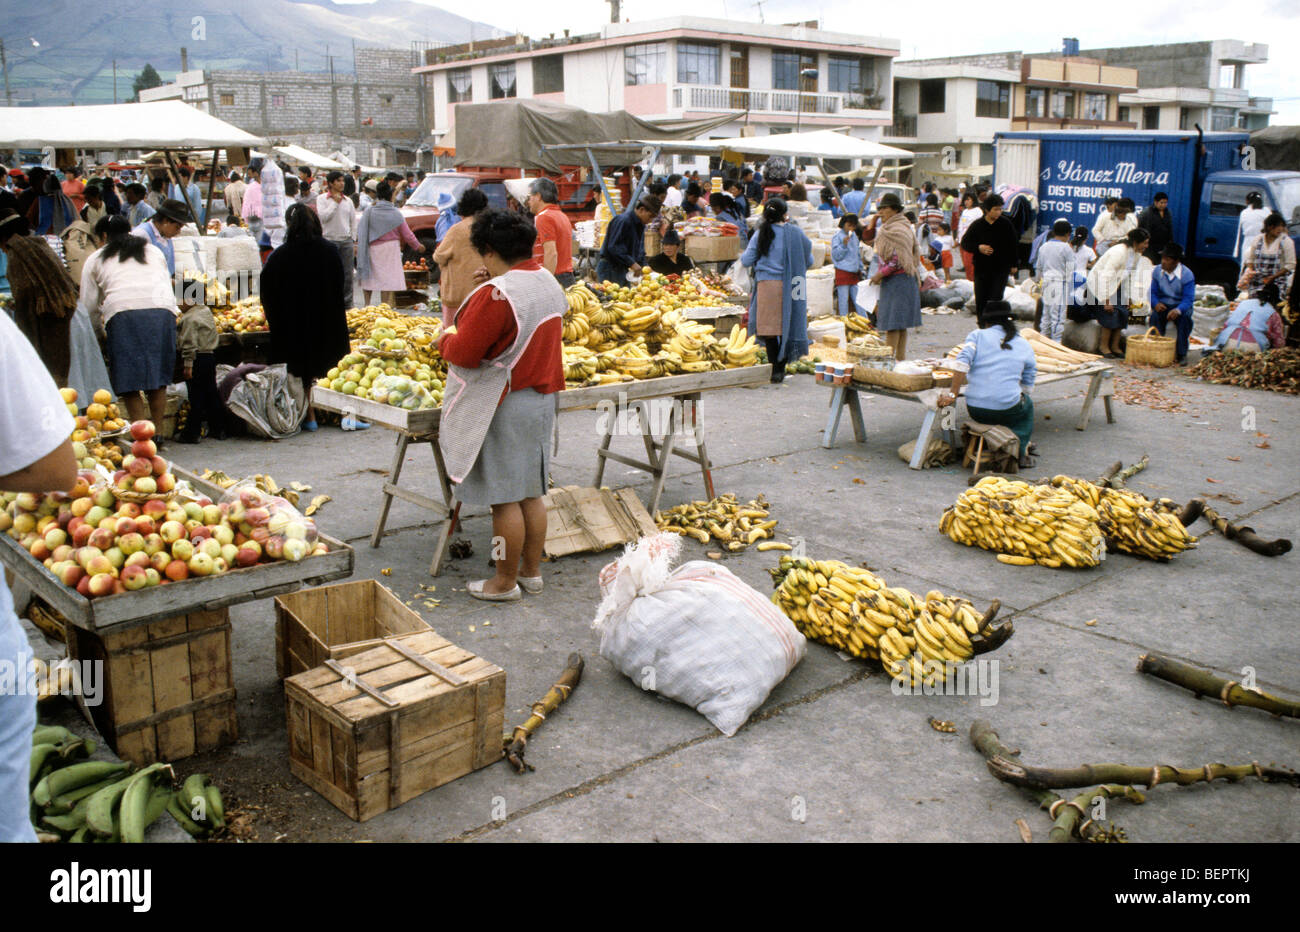 Banana seller in Ecuadorian local market. Stock Photo